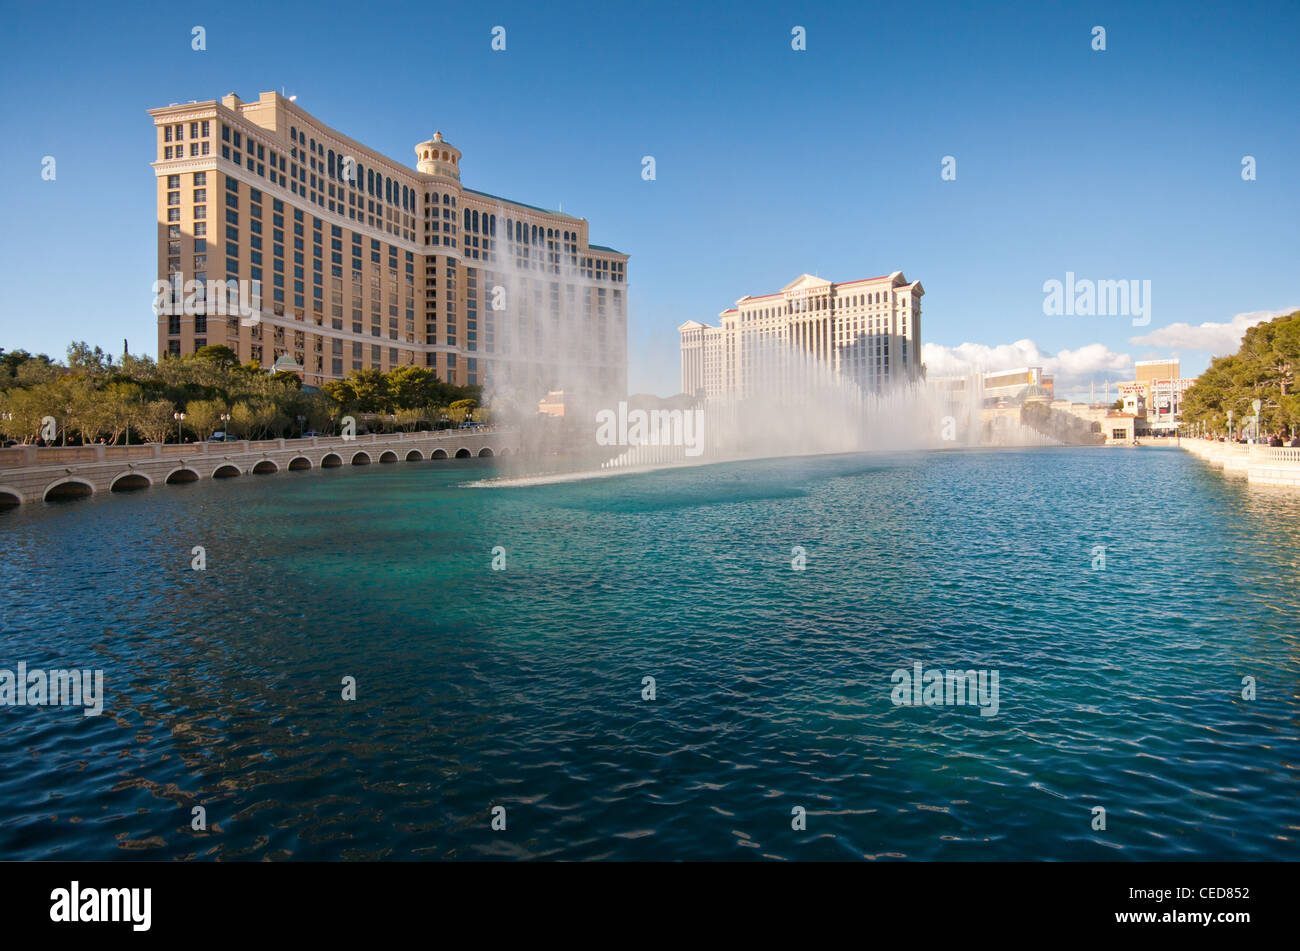 The Bellagio Hotel and Casino in Las Vegas , Nevada, USA Stock Photo